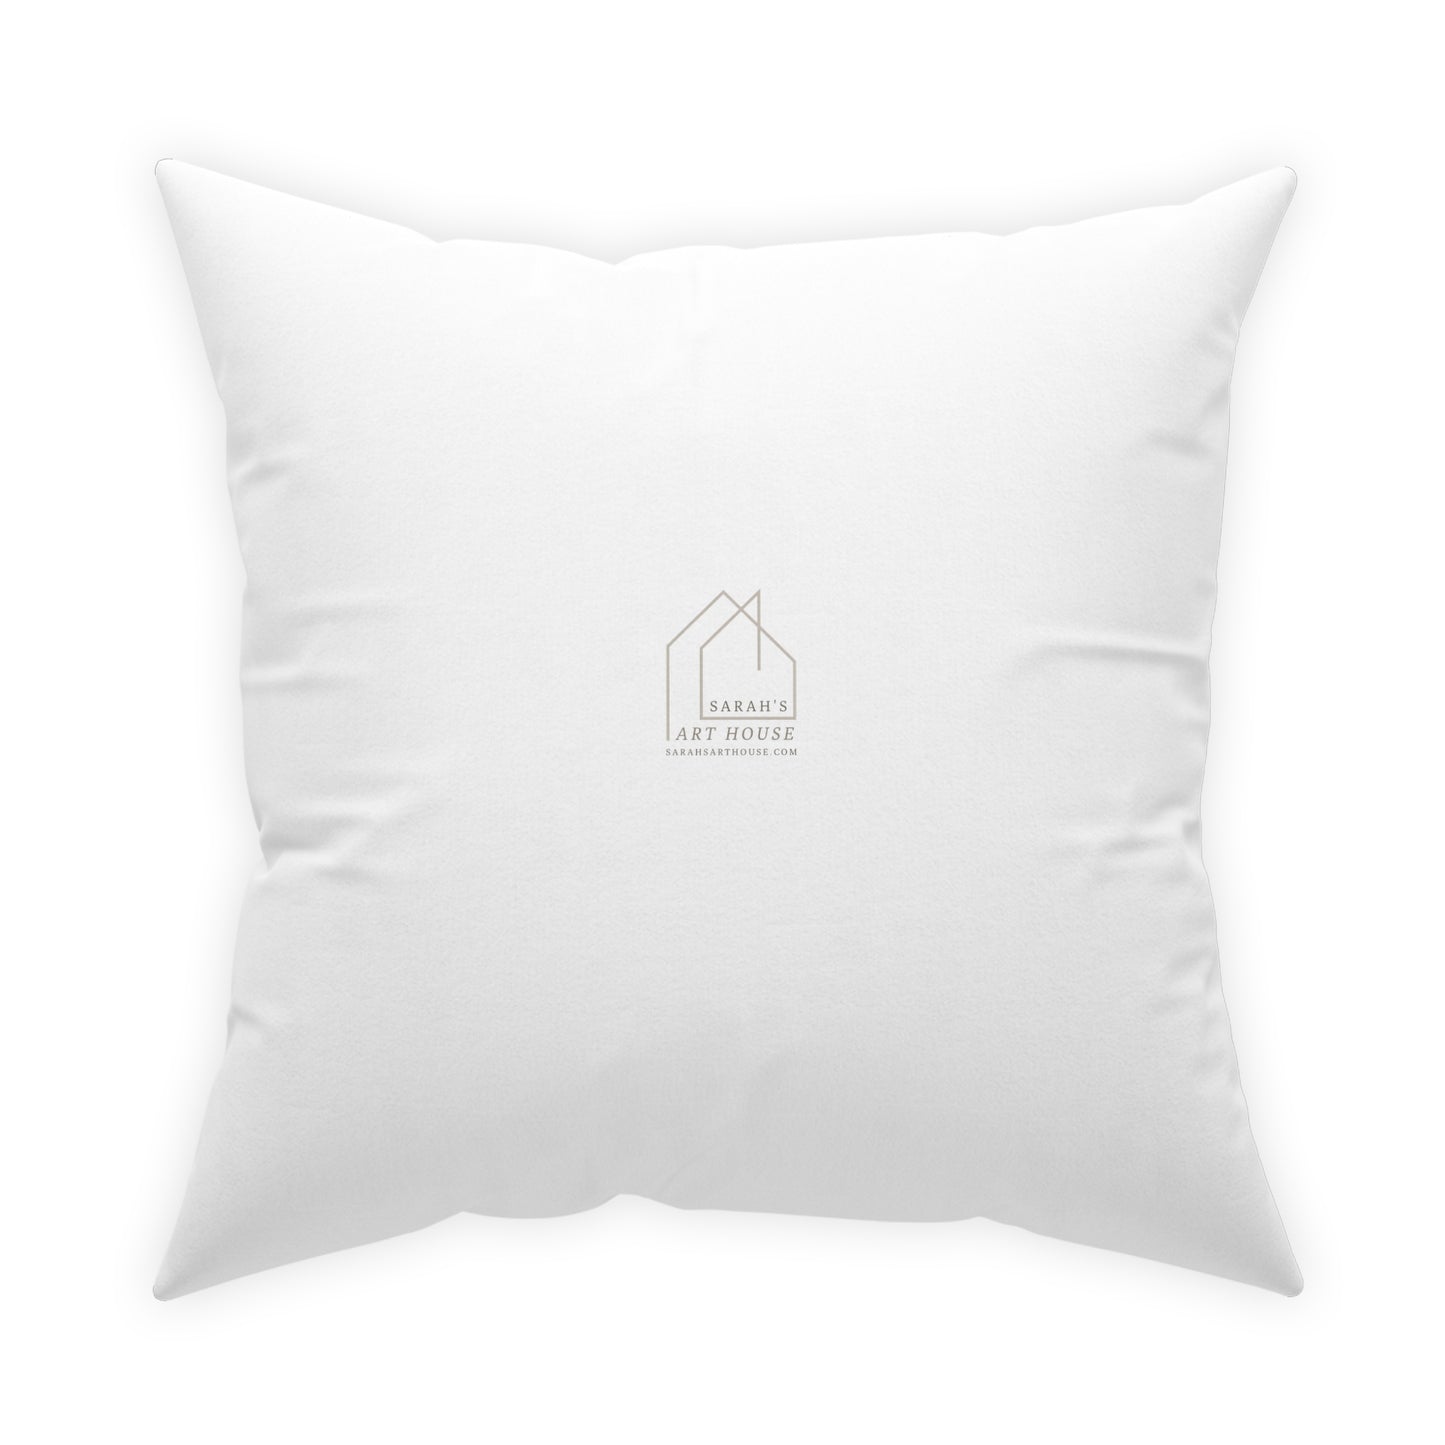 White Throw Pillow - Heart throw Pillow - Colorful Throw pillow for sofa